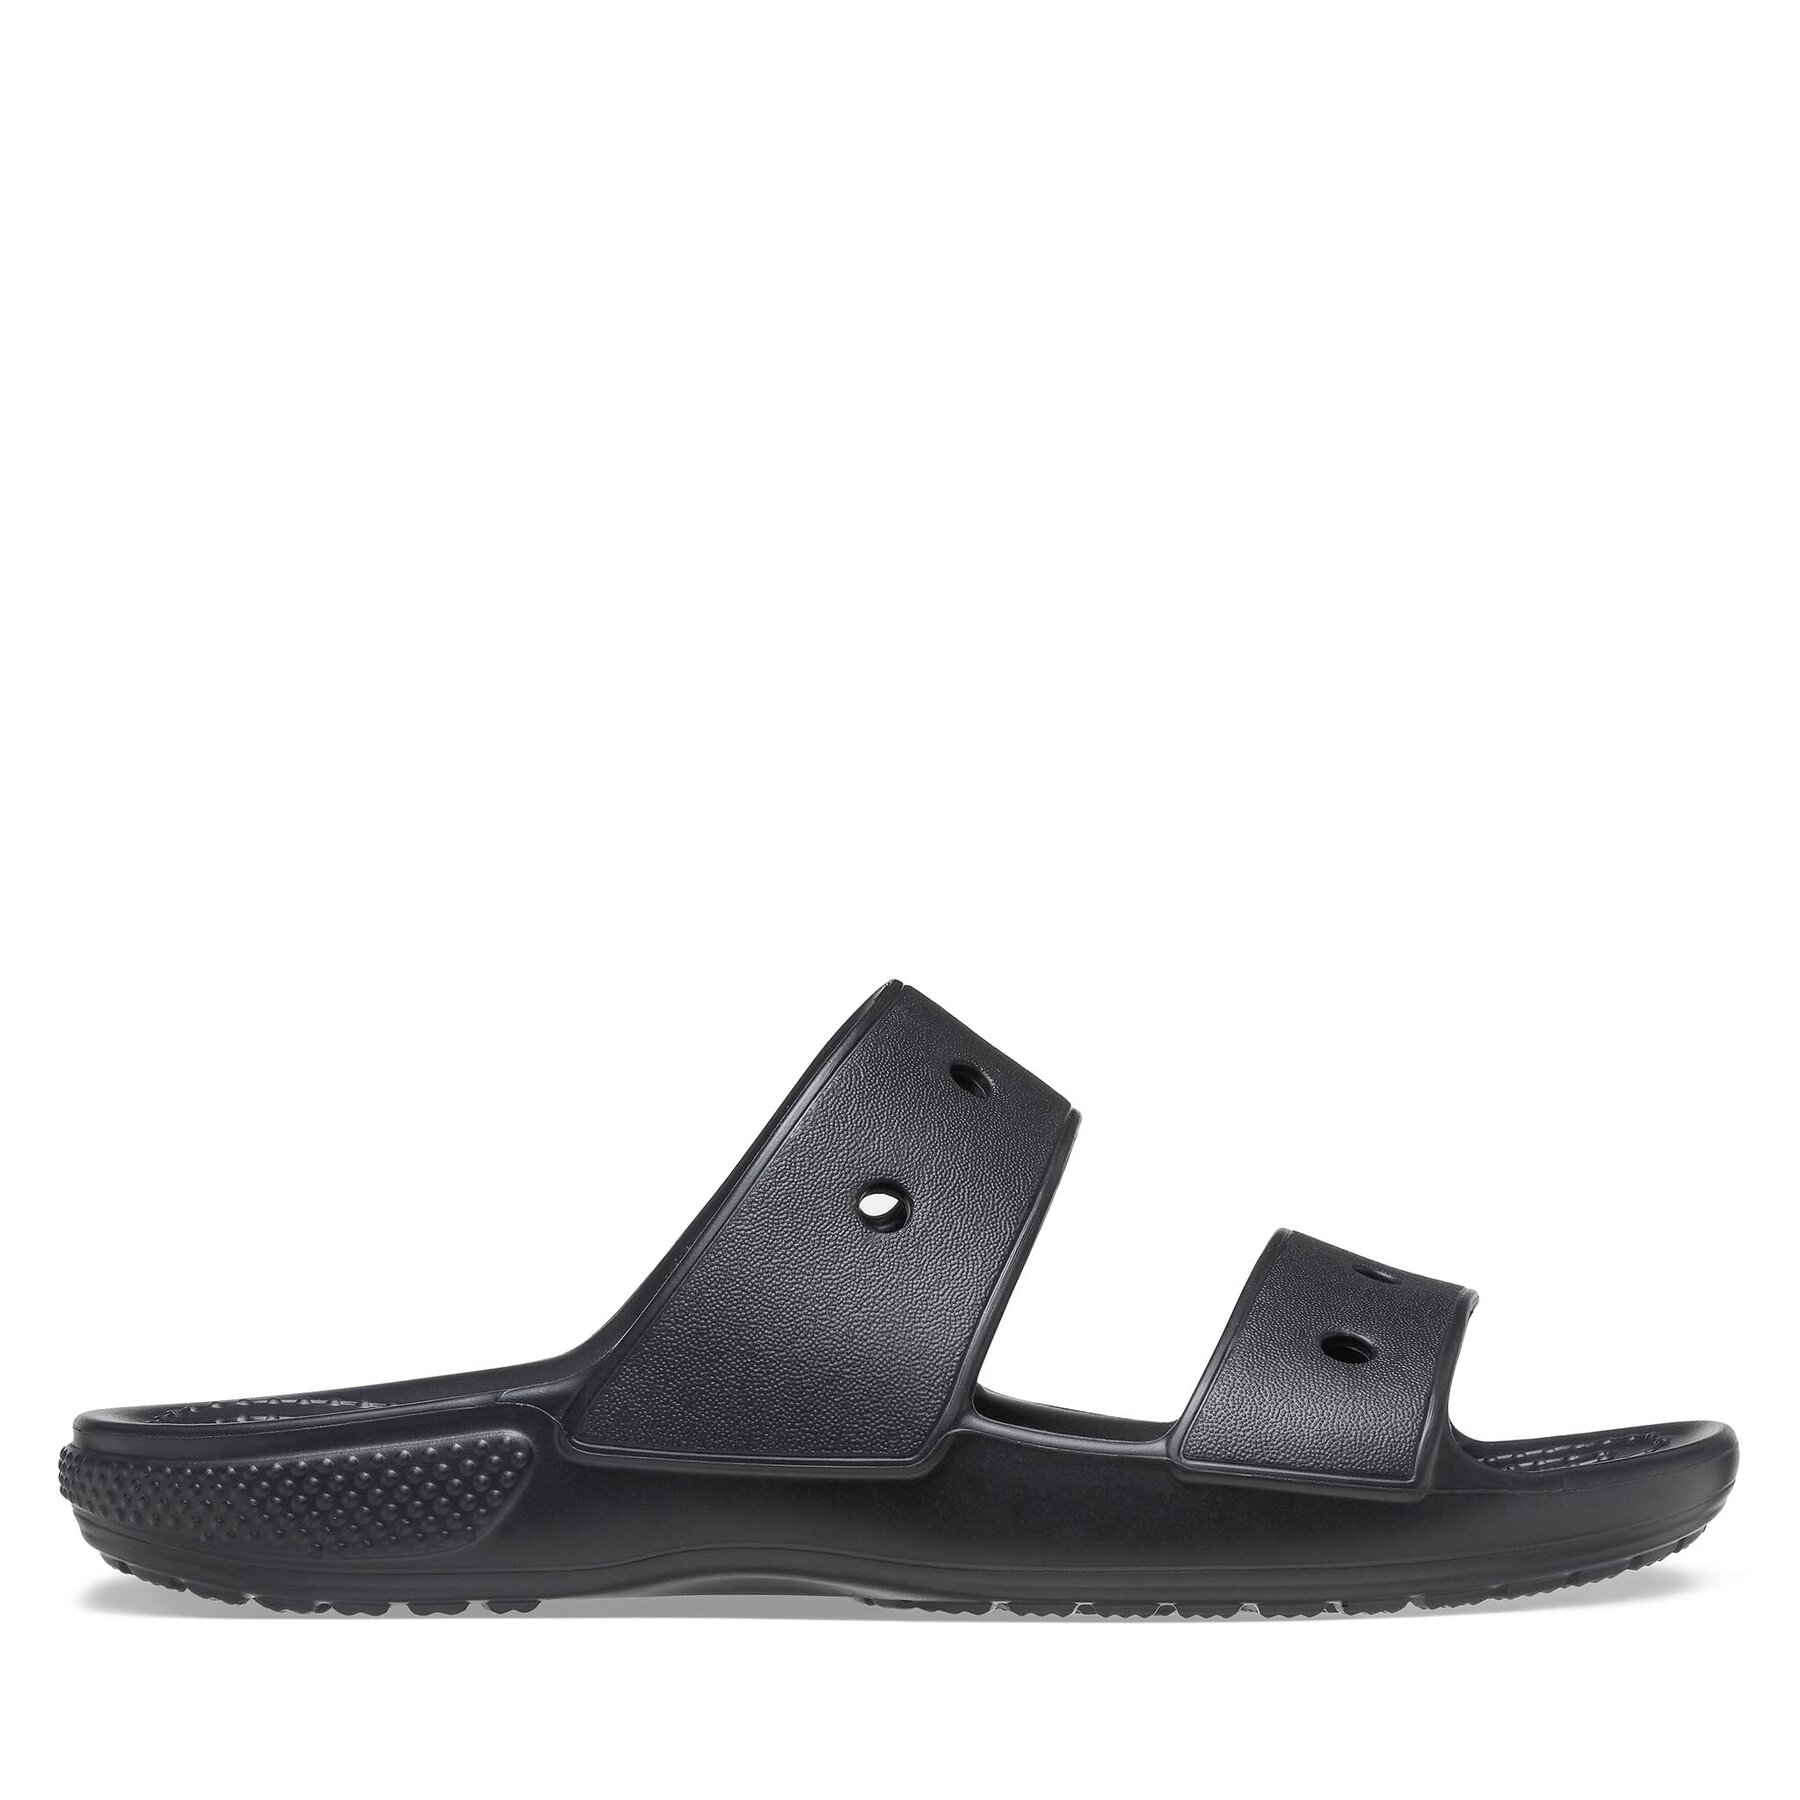 Comprar en oferta Crocs Classic Sandals (207536) black